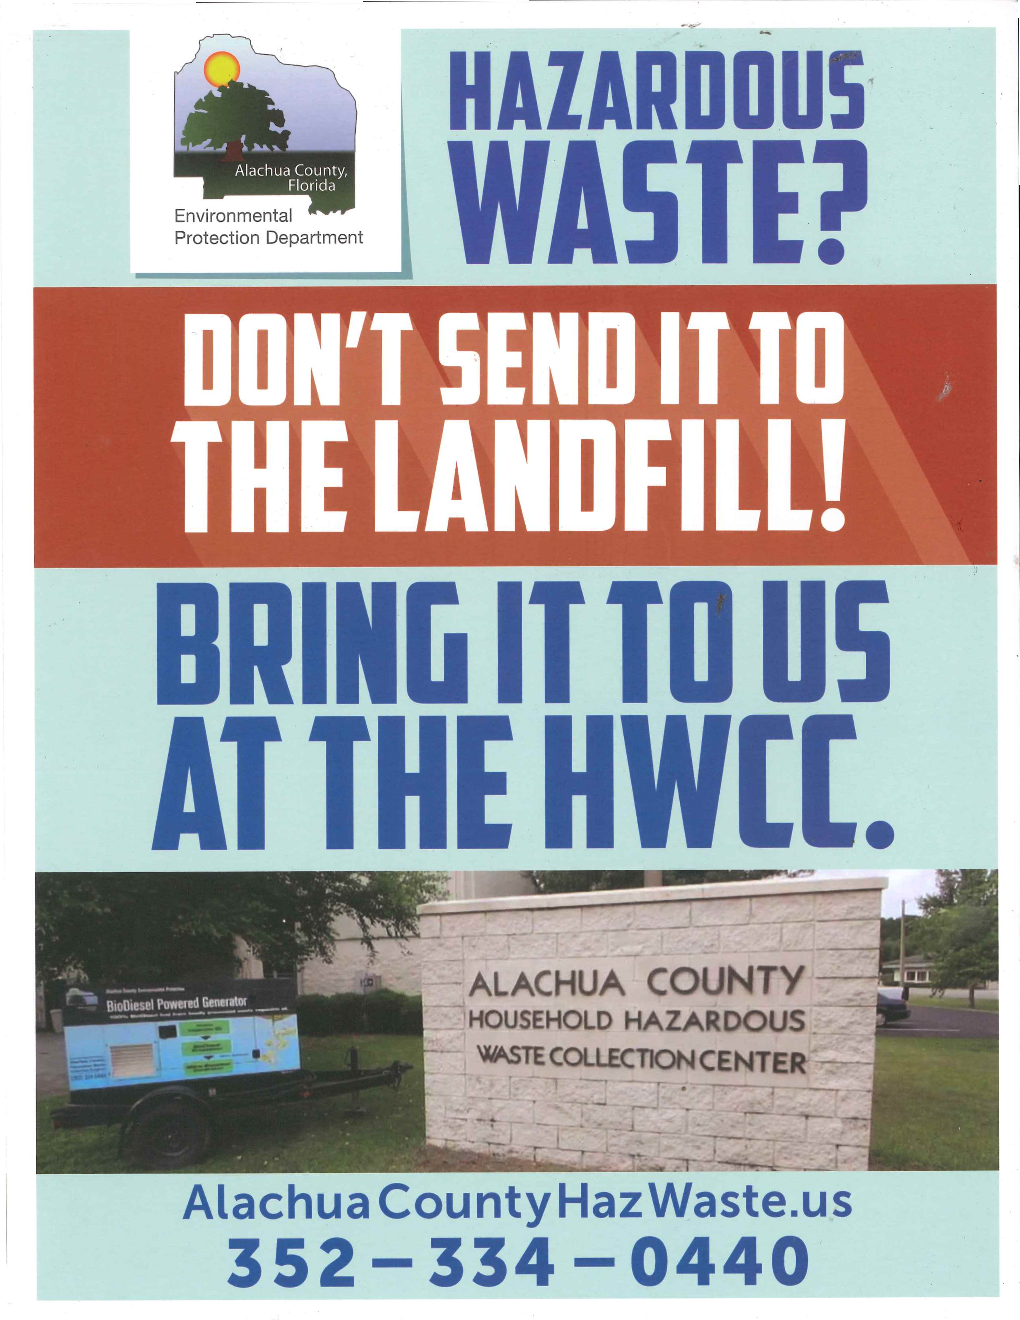 Alachua County Hazardous Waste Collection Center